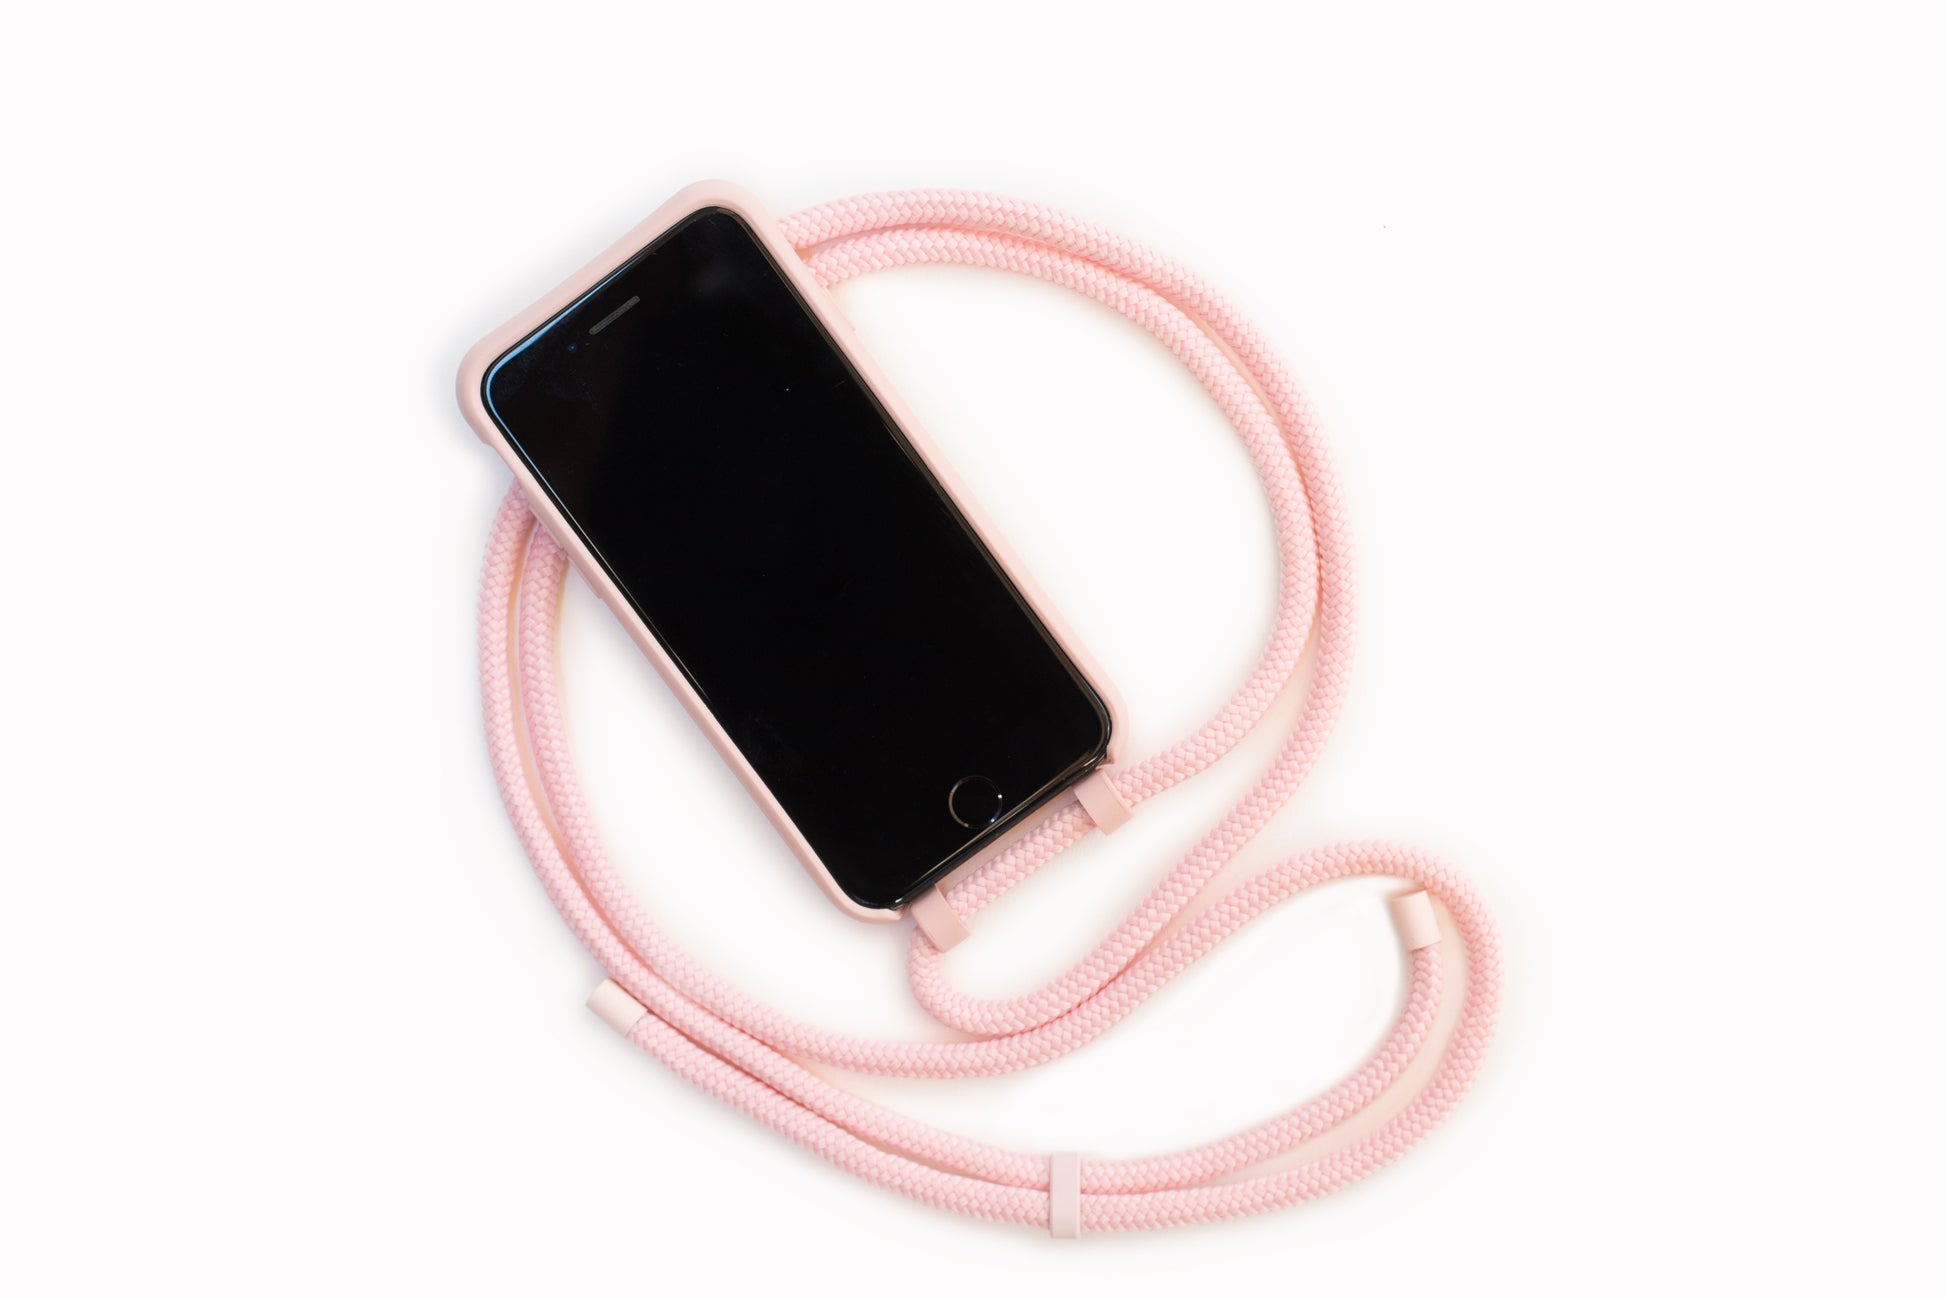 Carcasa interior terciopelo con cuerda para iPhone XR